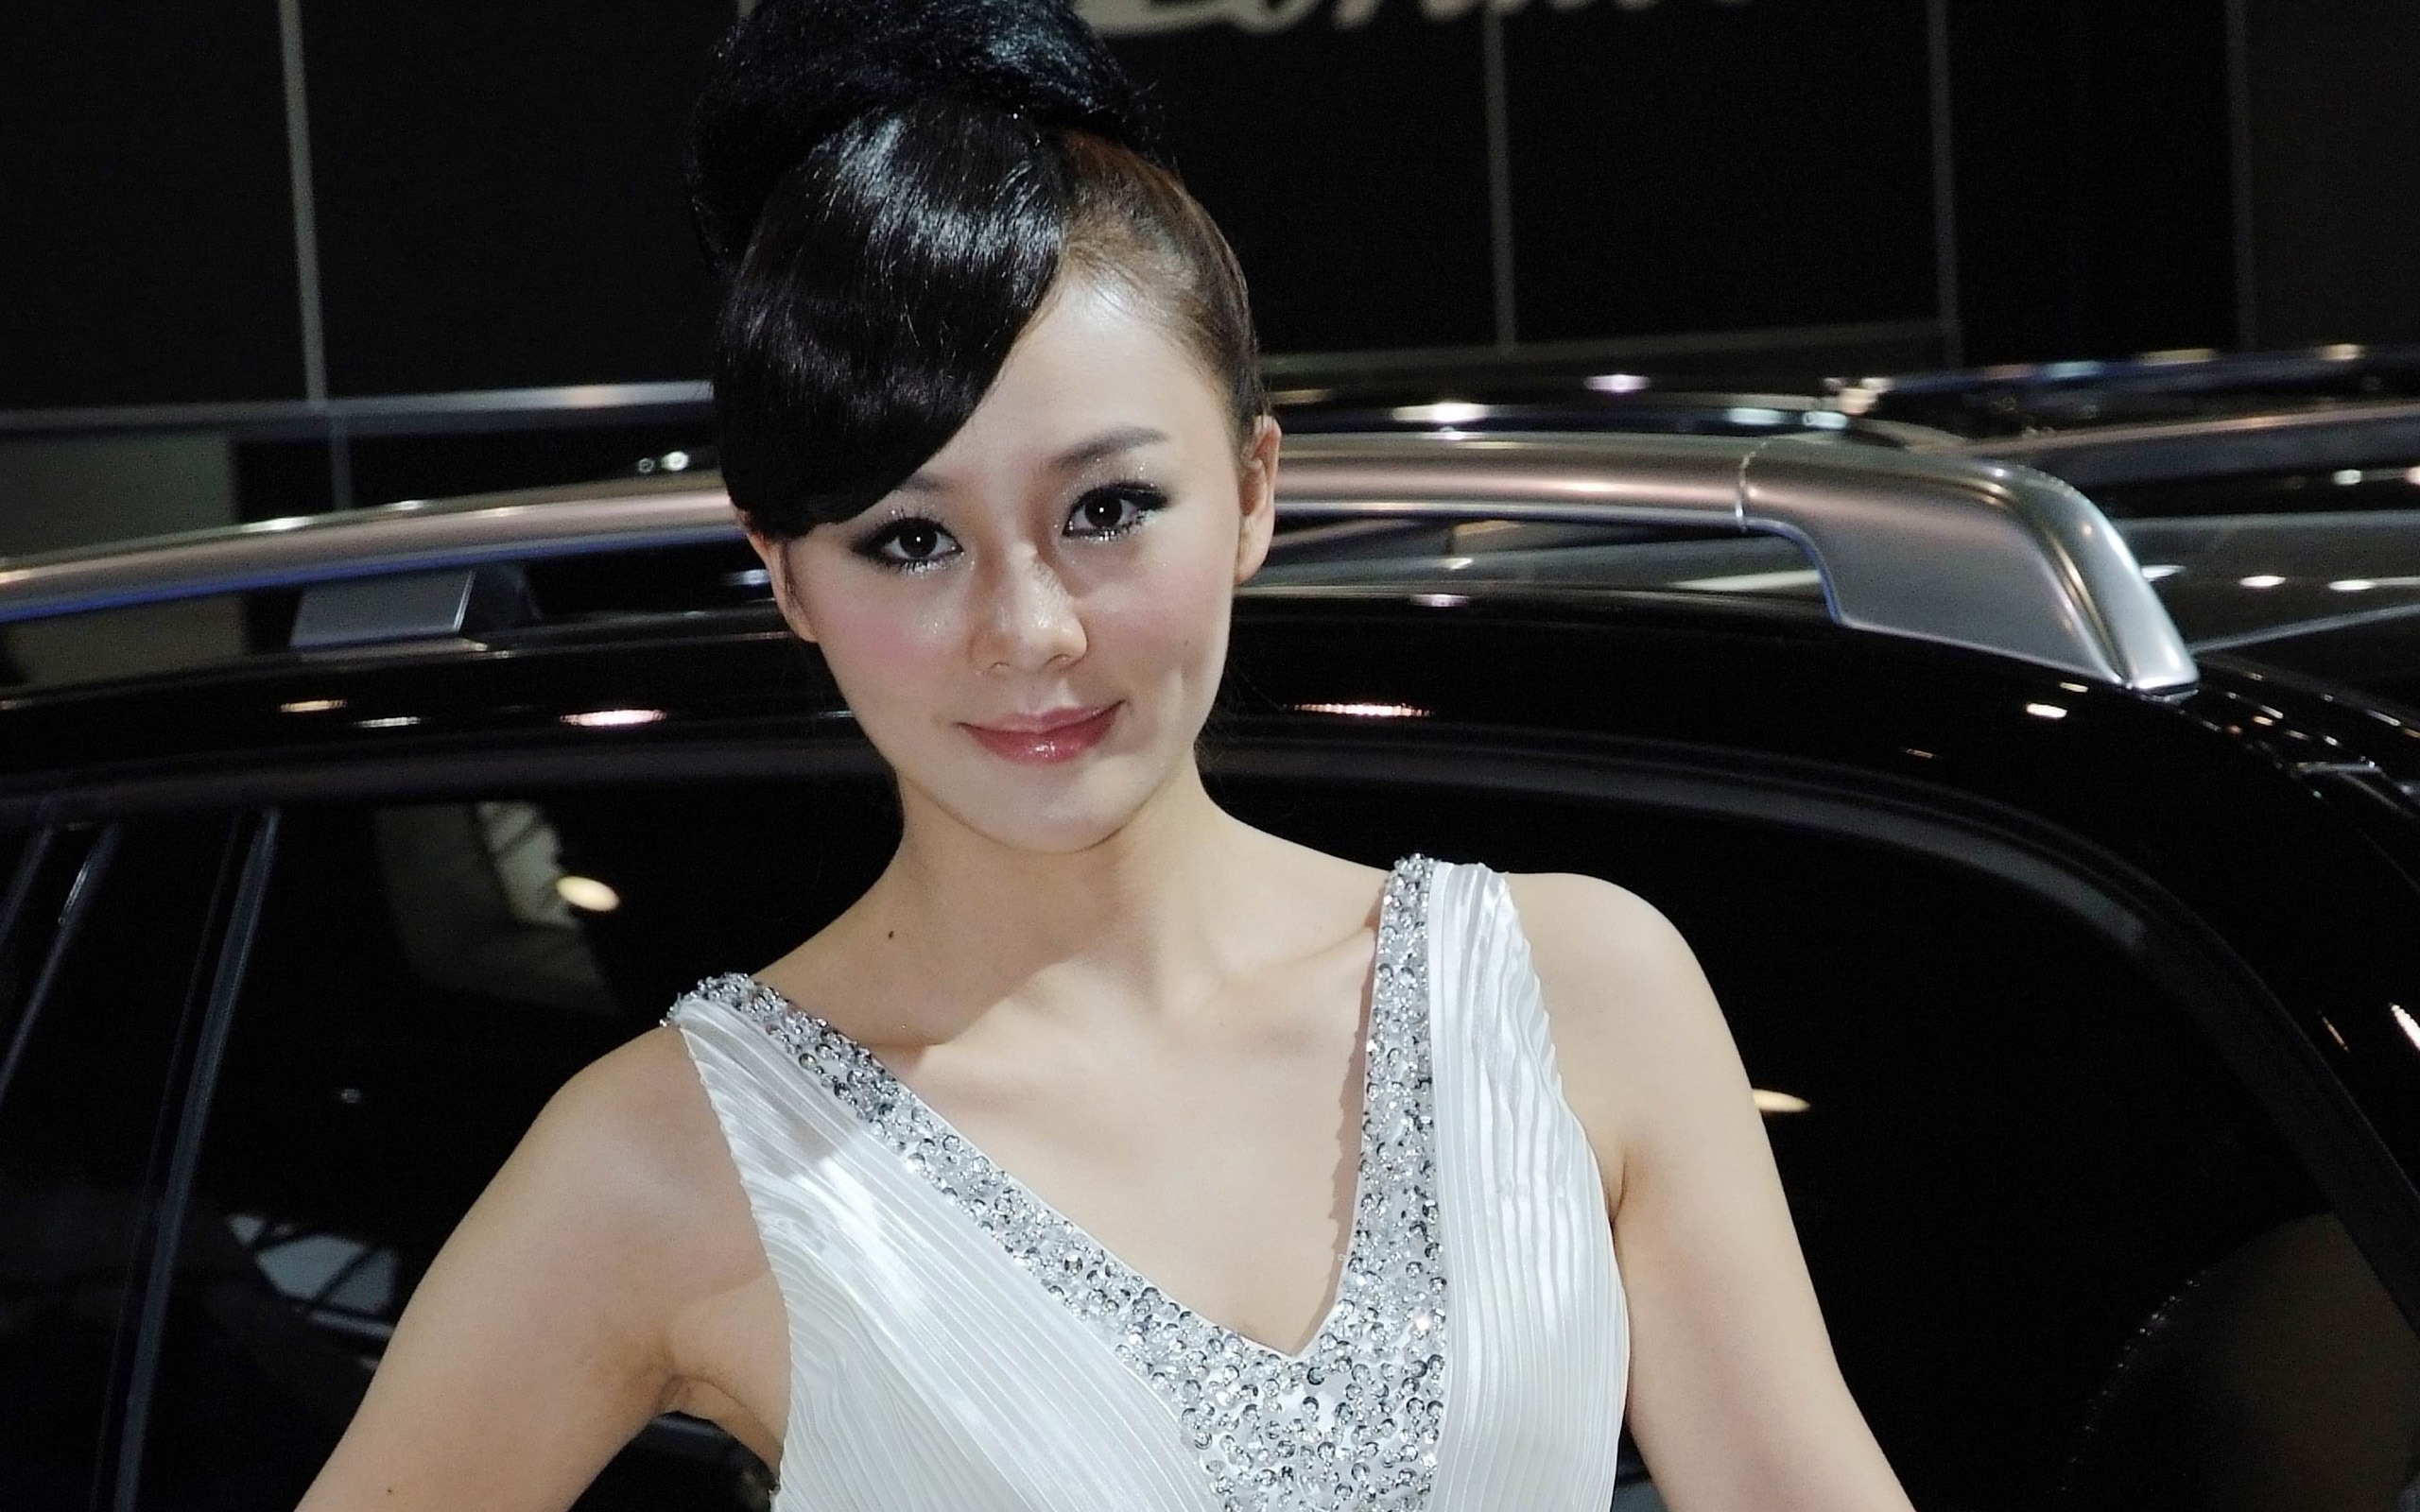 2010北京国际车展 美女车模 (螺纹钢作品)10 - 2560x1600